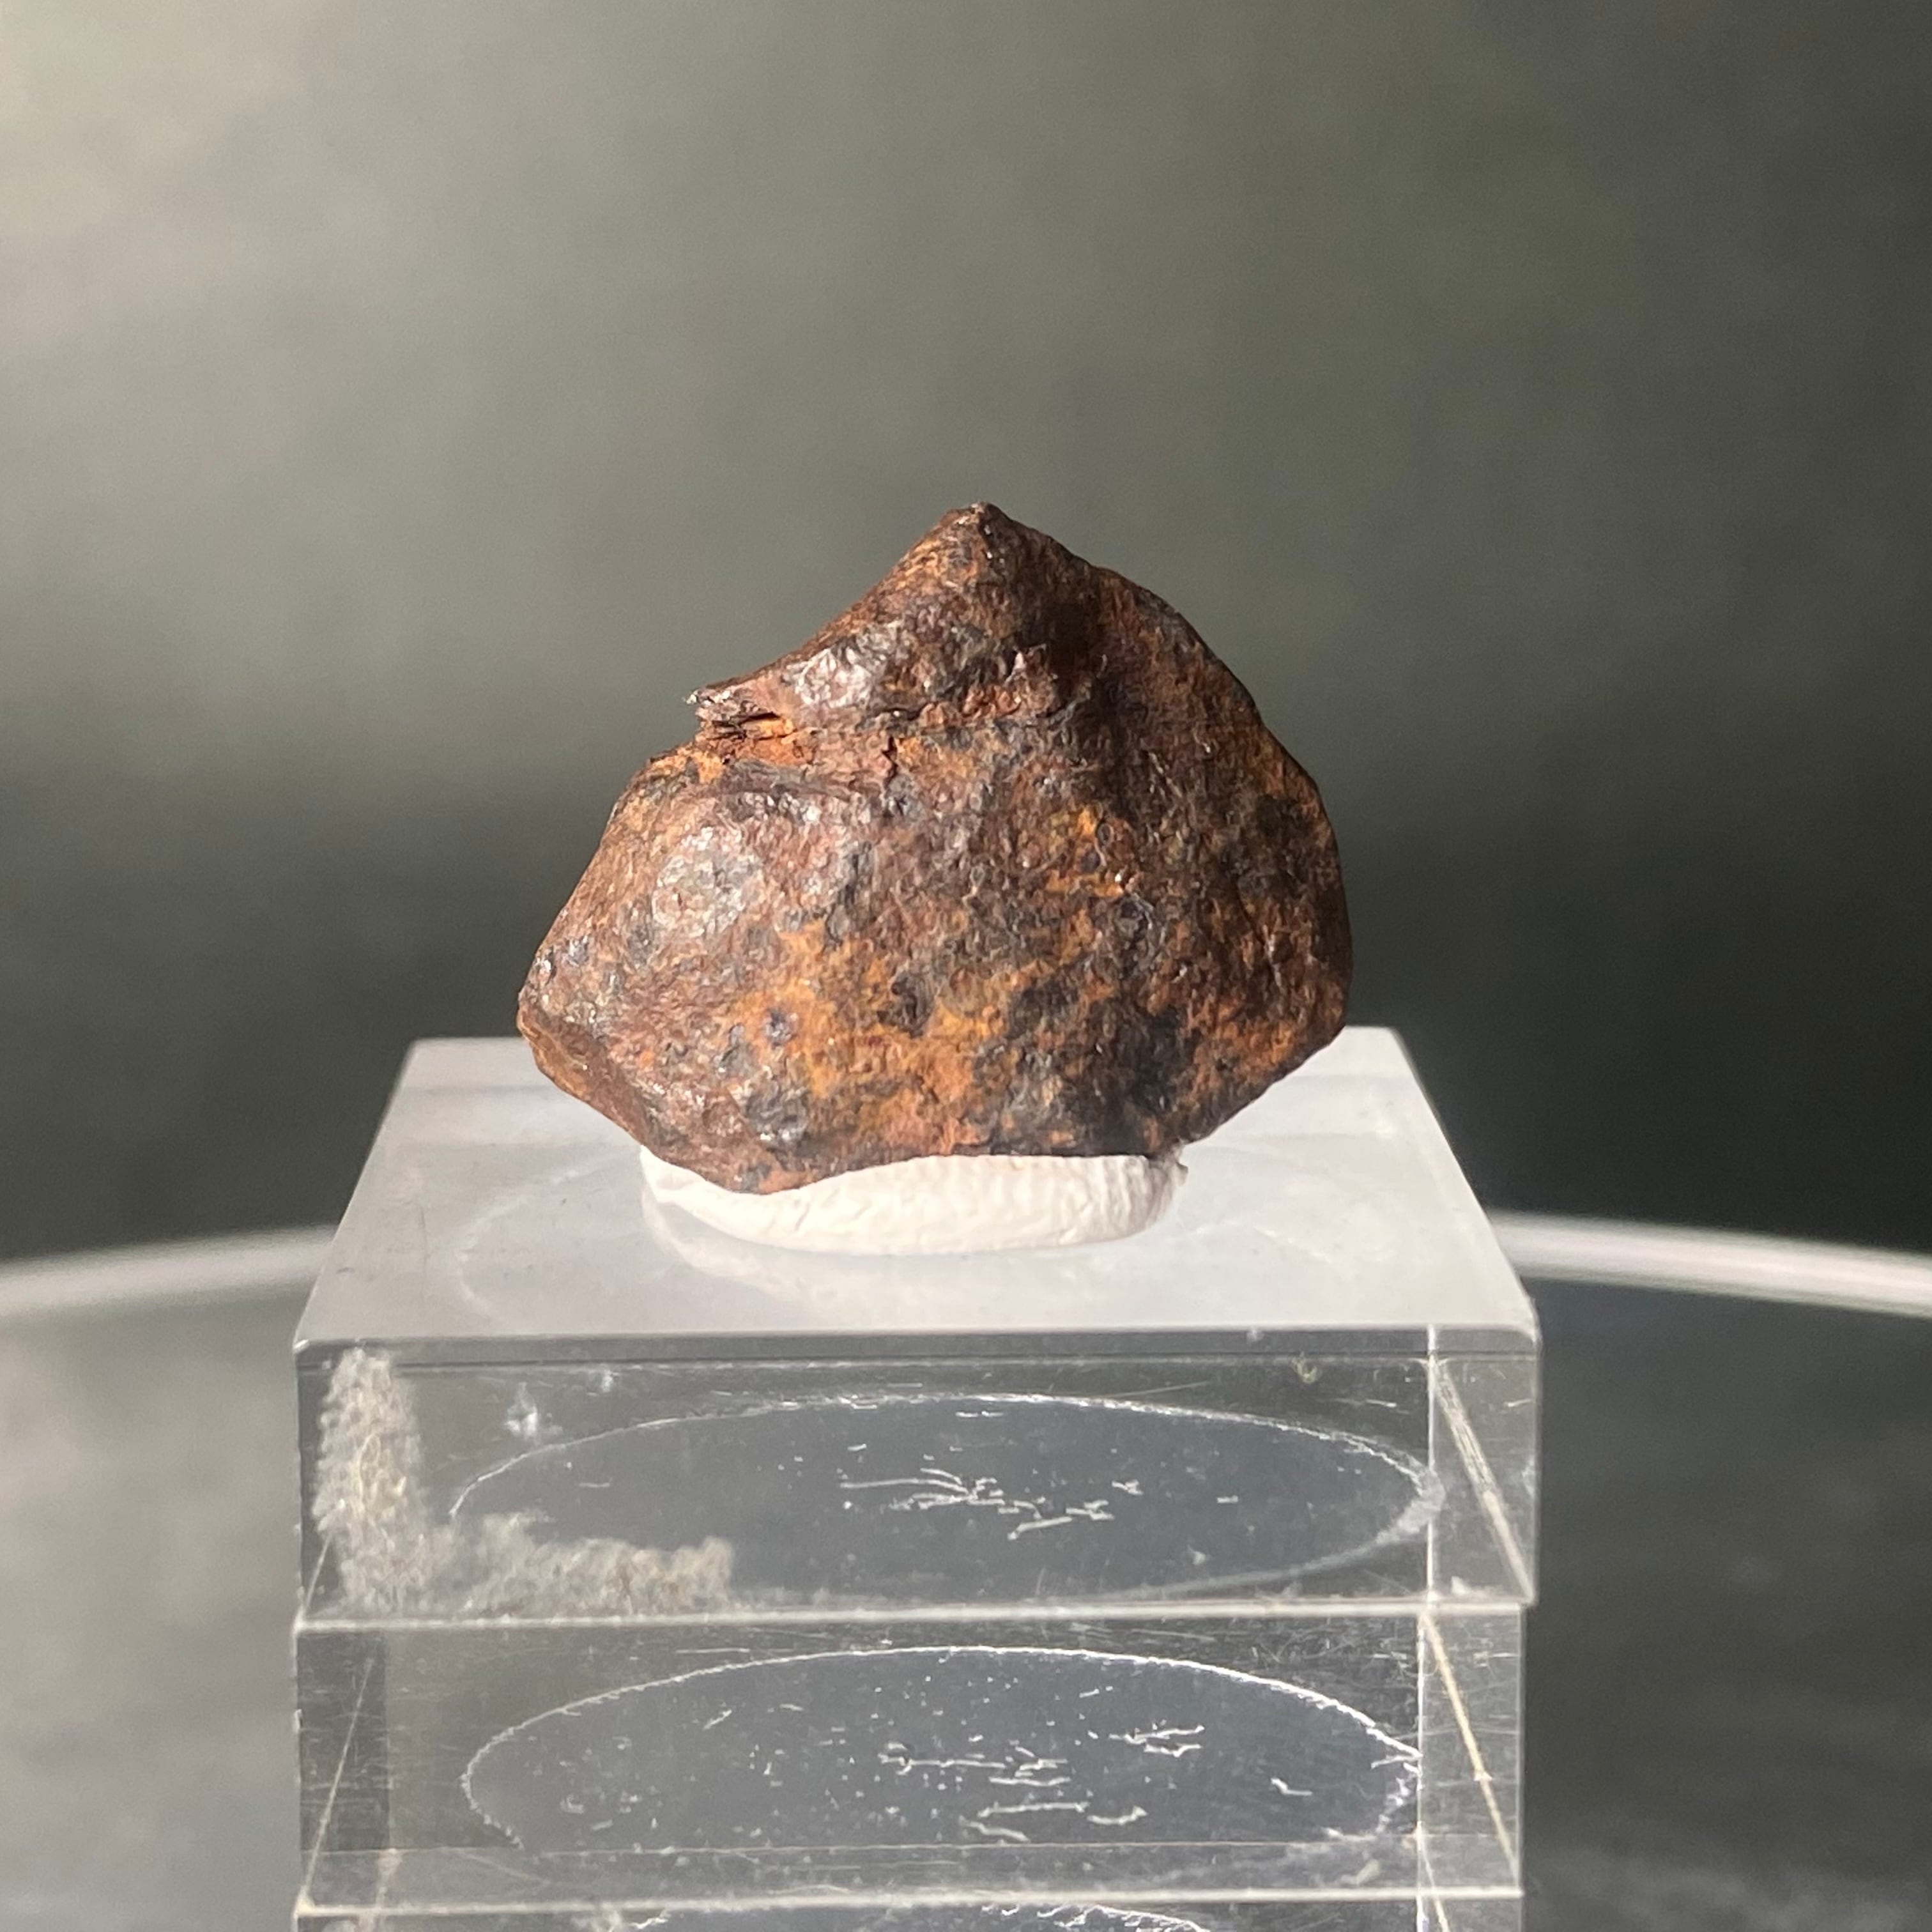 マンドラビラ隕石-